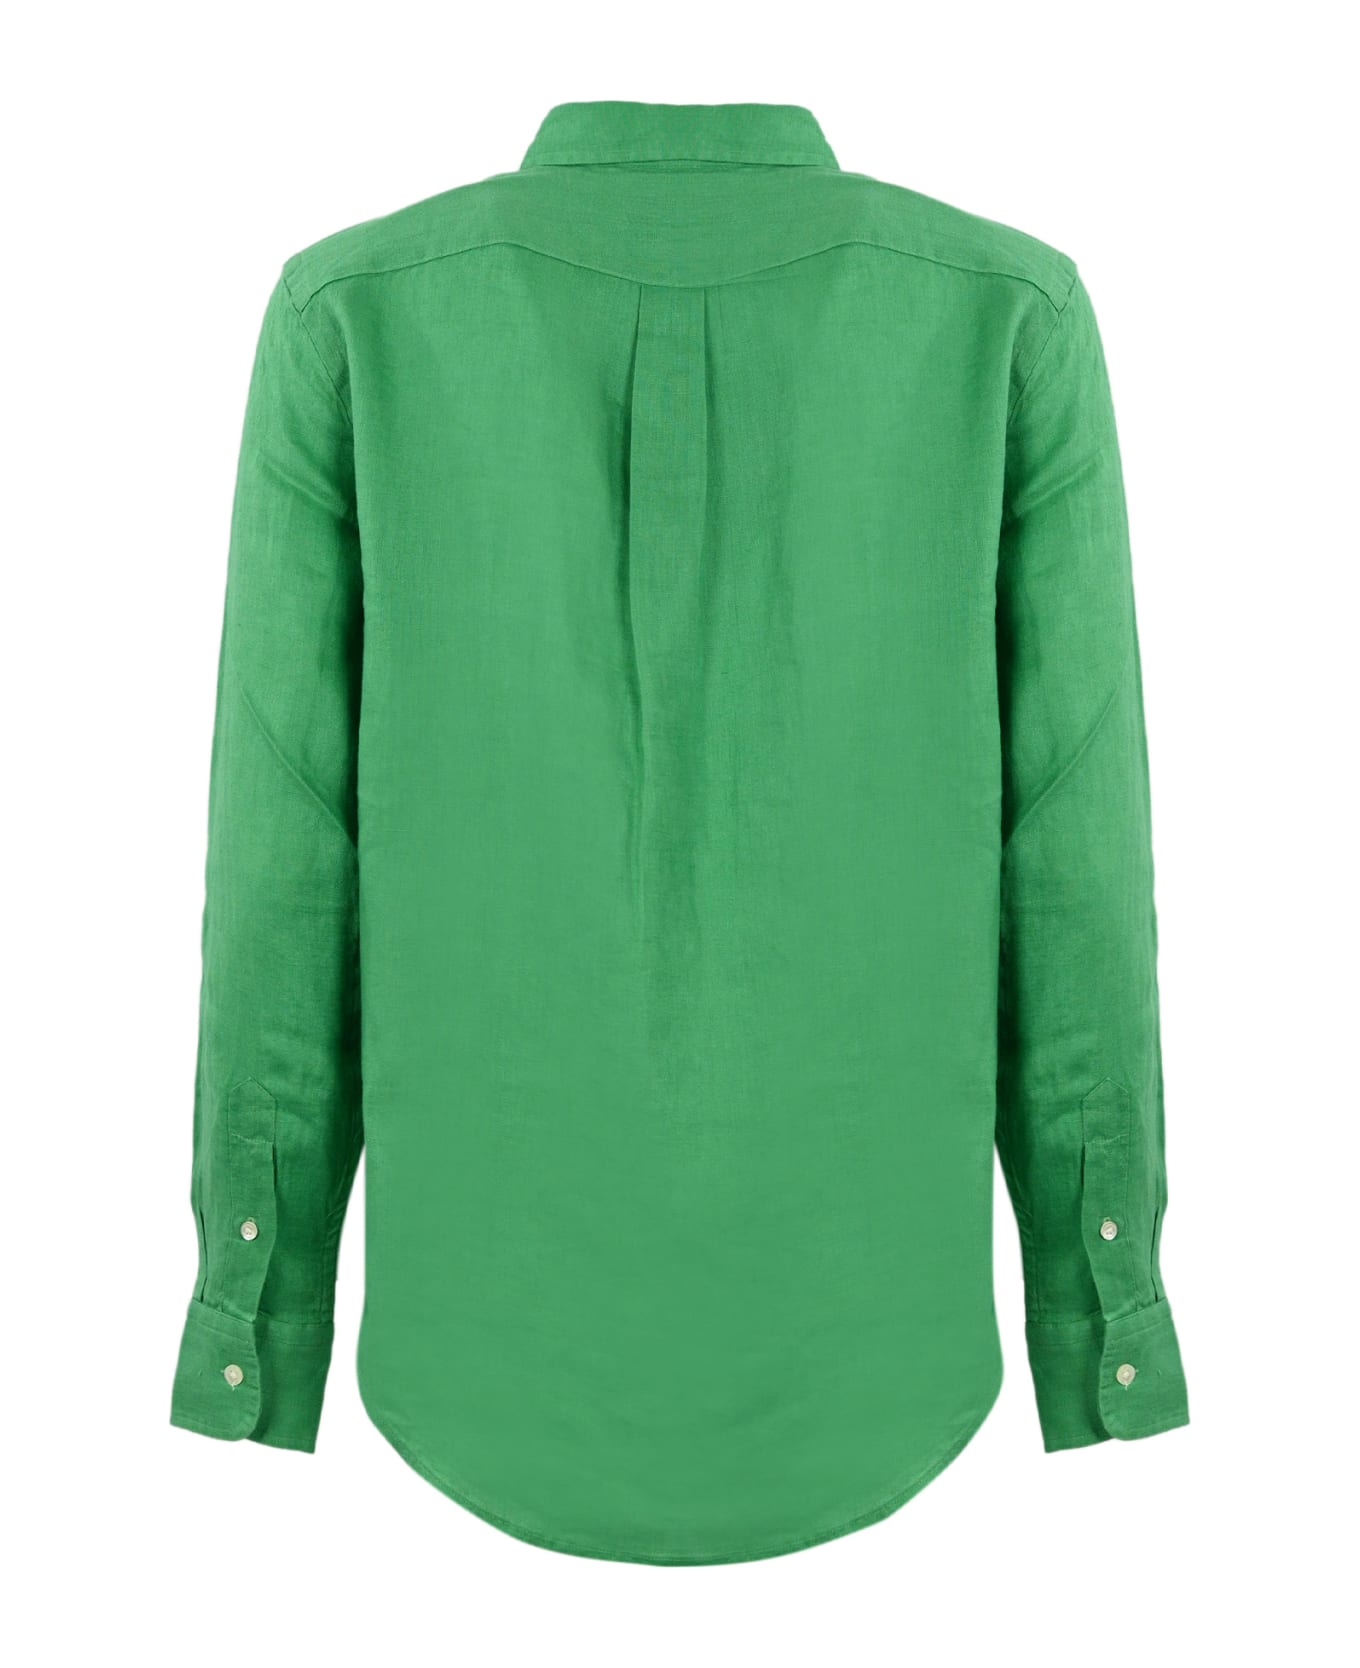 Polo Ralph Lauren Shirt - Vineyard green シャツ